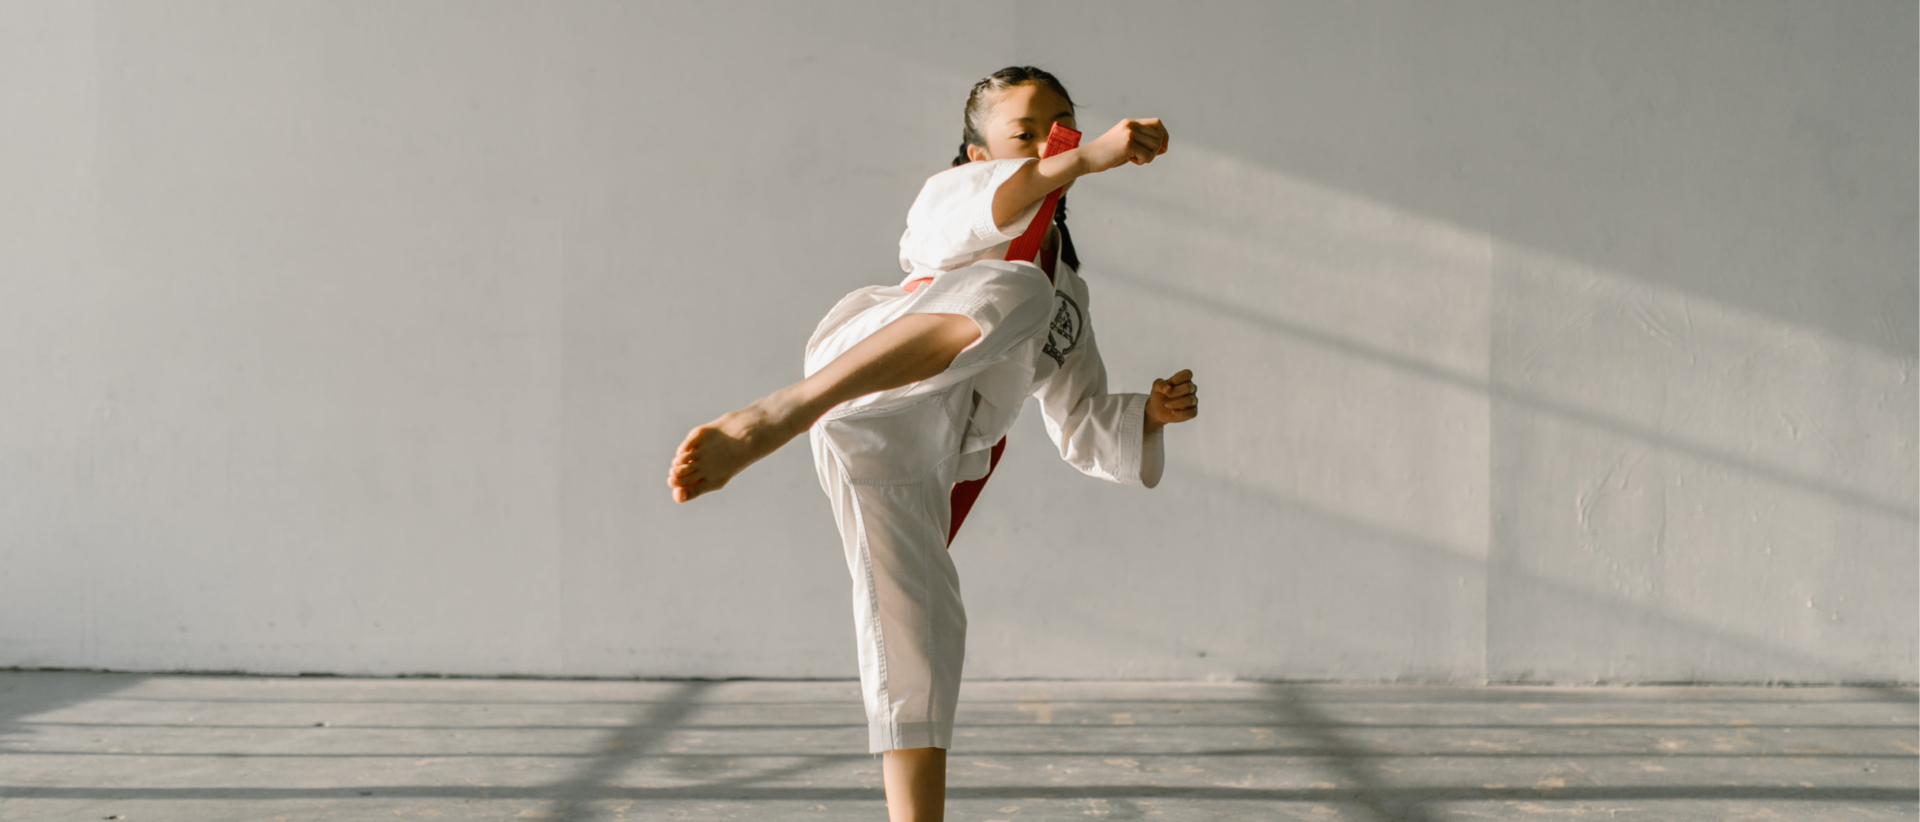 Cours de Taekwondo Paris 15